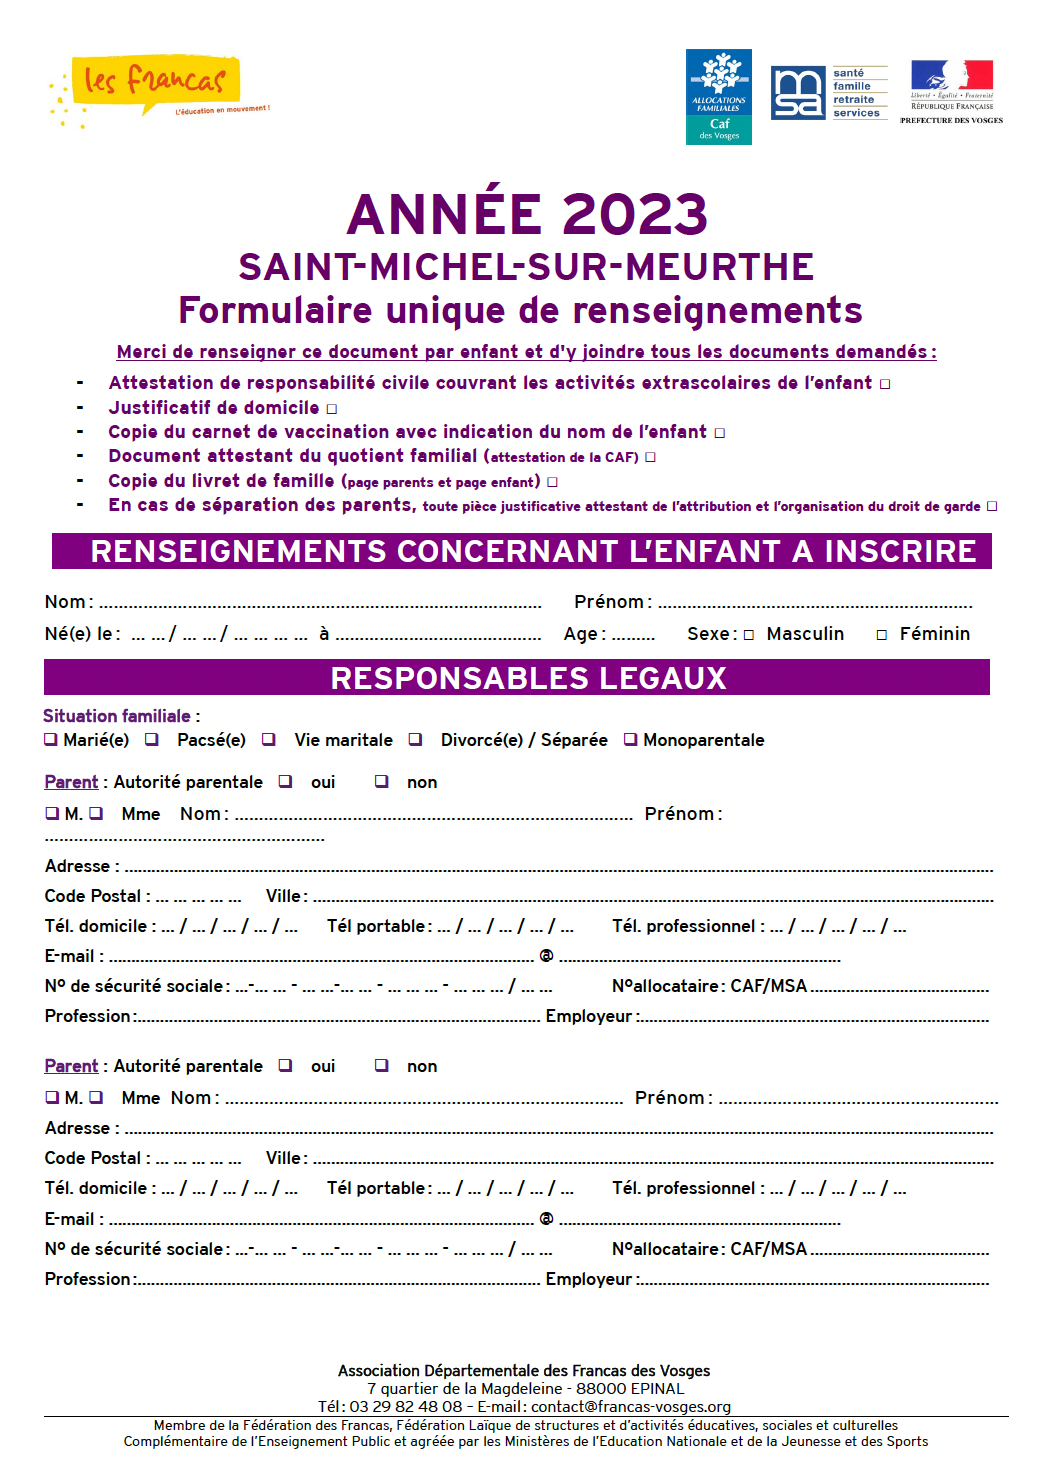 Formulaire unique renseignements 2023 Saint-Michel-sur-Meurthe